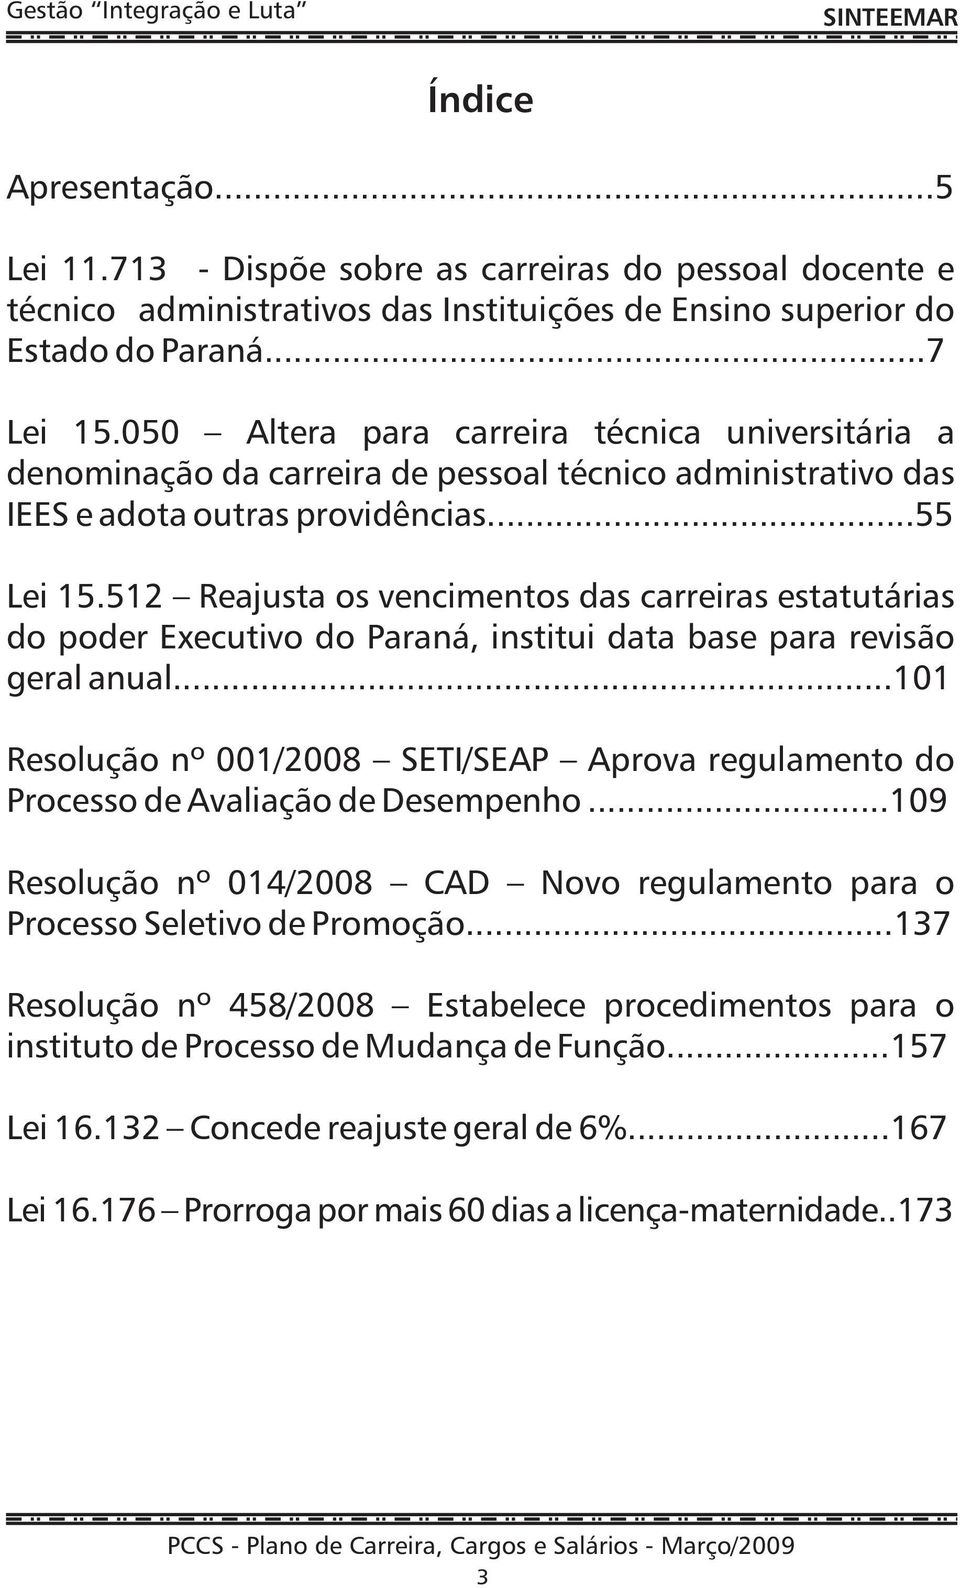 512 Reajusta os vencimentos das carreiras estatutárias do poder Executivo do Paraná, institui data base para revisão geral anual.